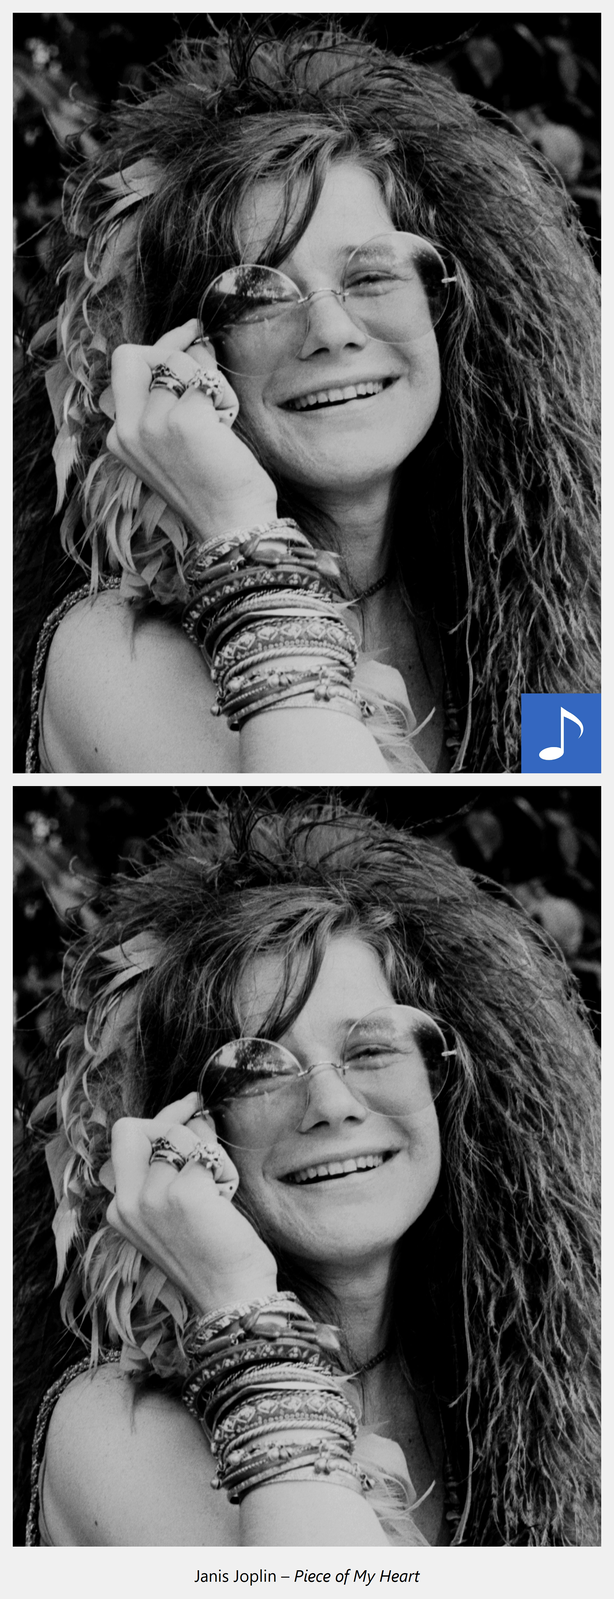 Ilustracja interaktywna przedstawiająca młoda roześmiana kobietę w okularach widoczną od ramion w górę. Na uniesionej do twarzy ręce ma liczne bransoletki a na palcach dłoni pierścionki. Po kliknięciu kursorem myszki w grafikę odtworzony zostaje utwór muzyczny oraz wyświetlona informacja: Janis Joplin- Piece of My Heart.
